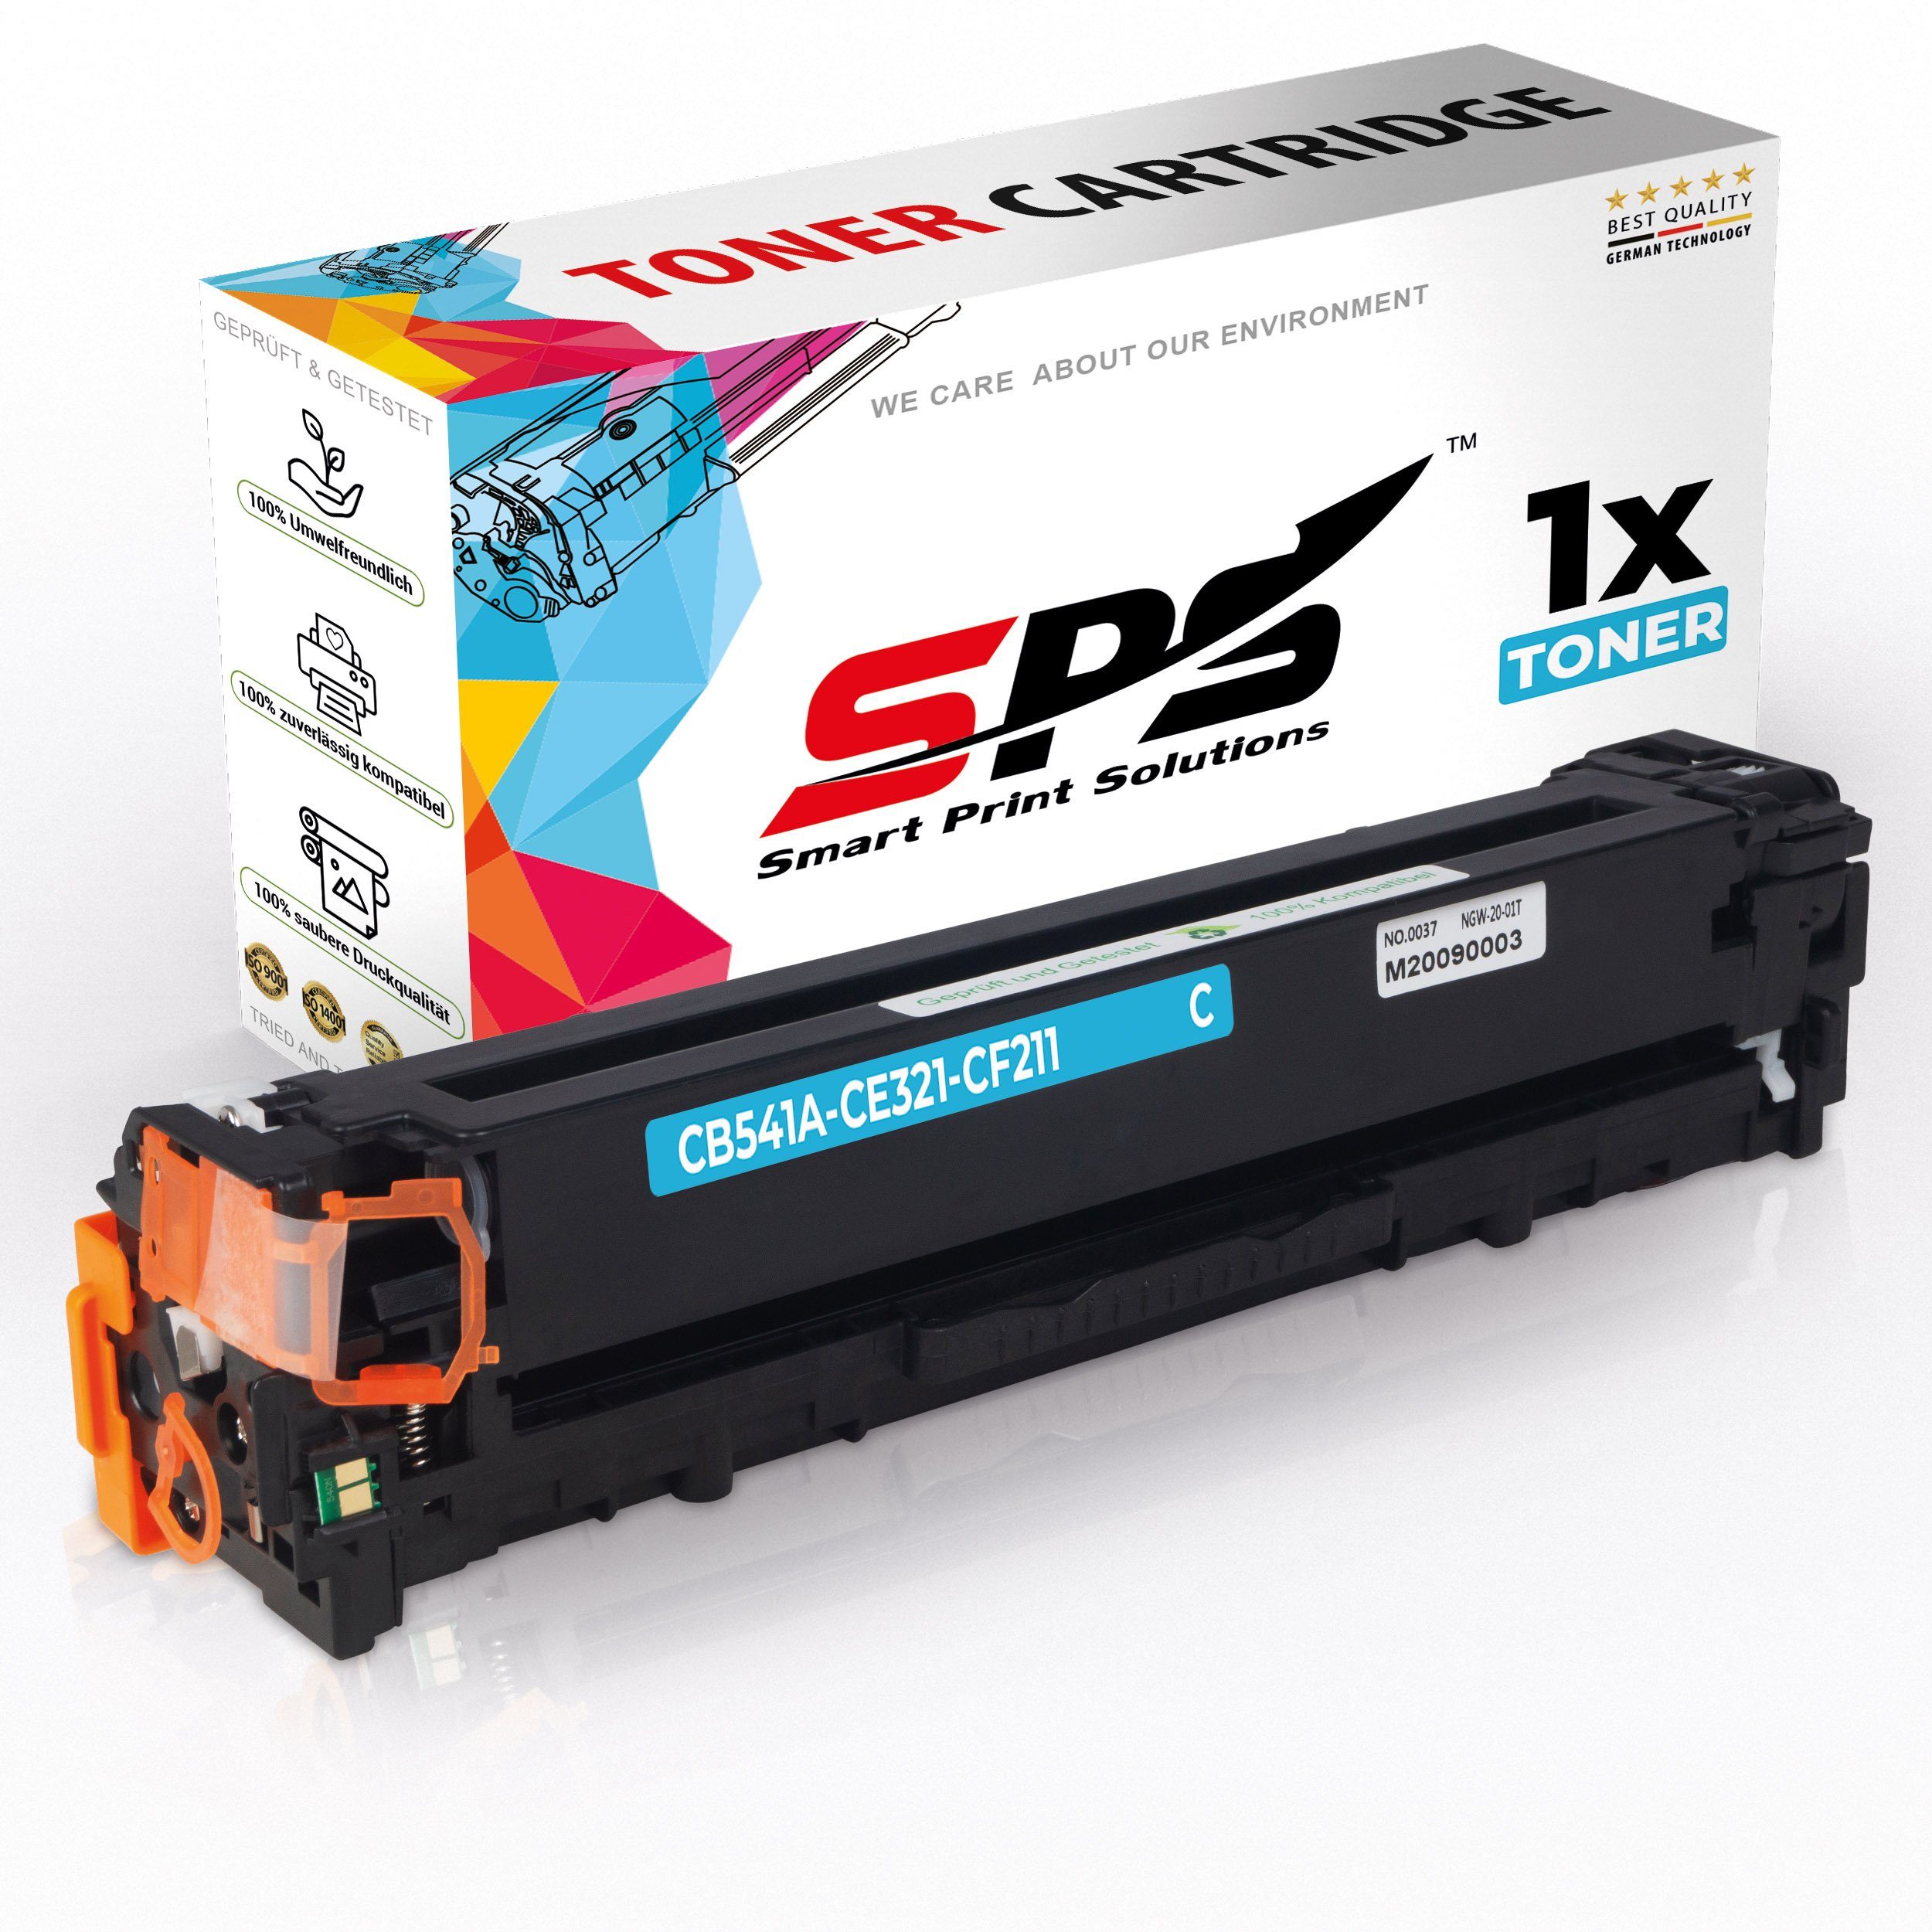 SPS Tonerkartusche Kompatibel für HP Color LaserJet CM 1512 NFI (CB54, (1er Pack, 1x Toner)